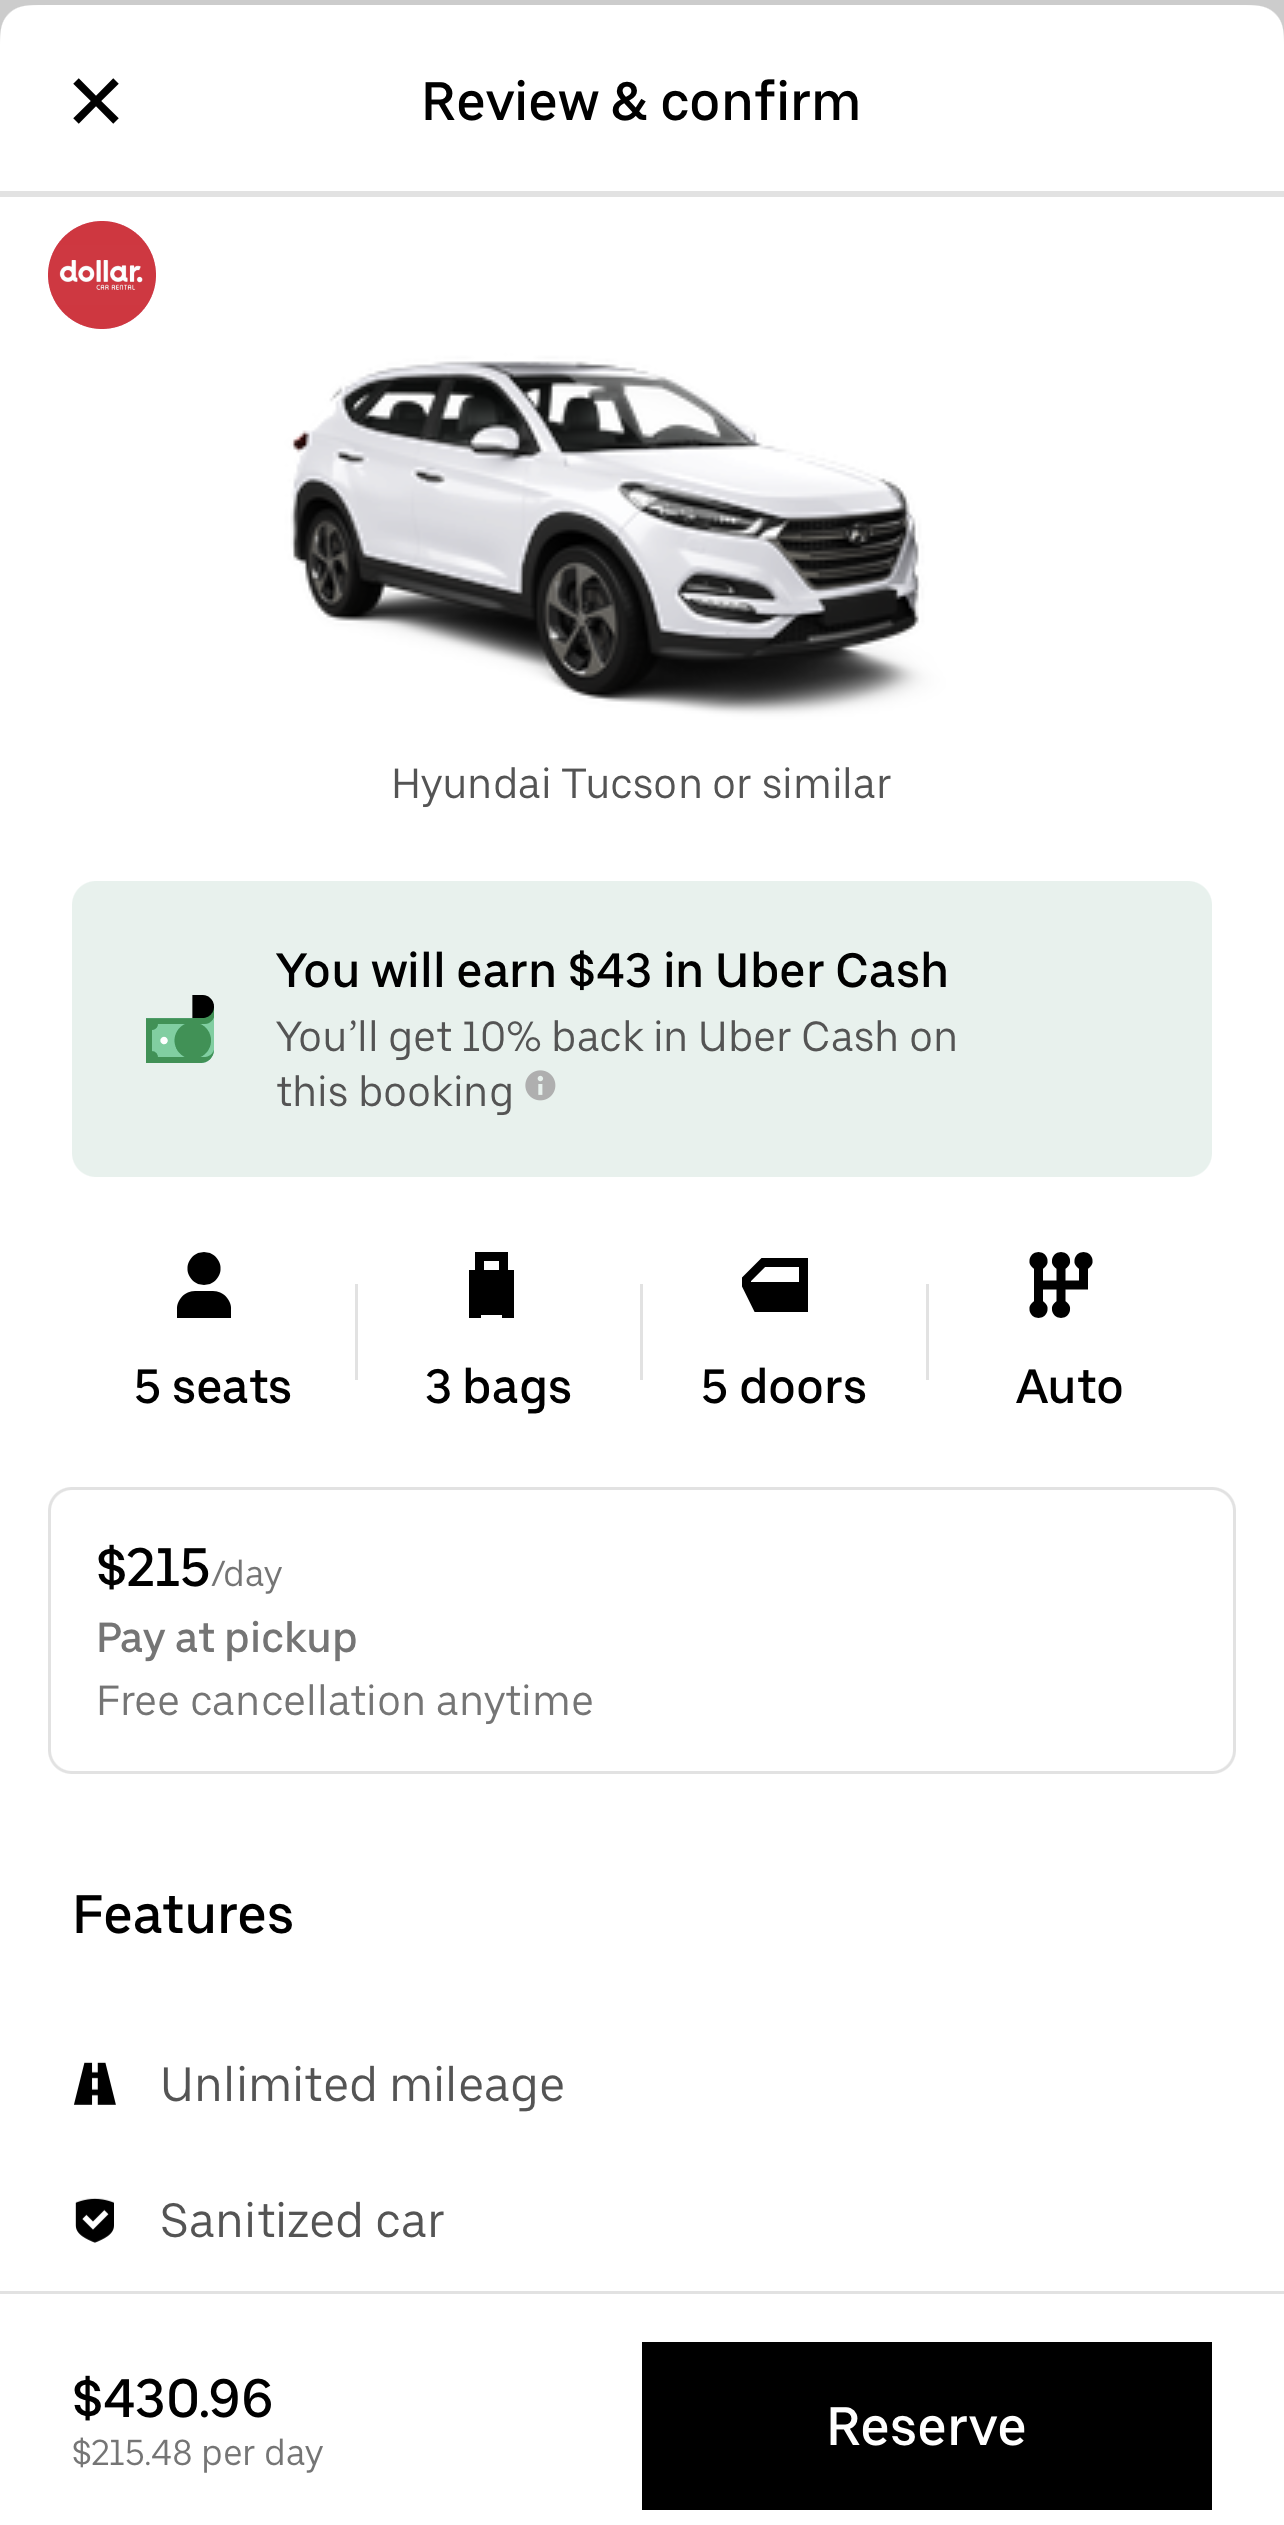 uber car rental business plan